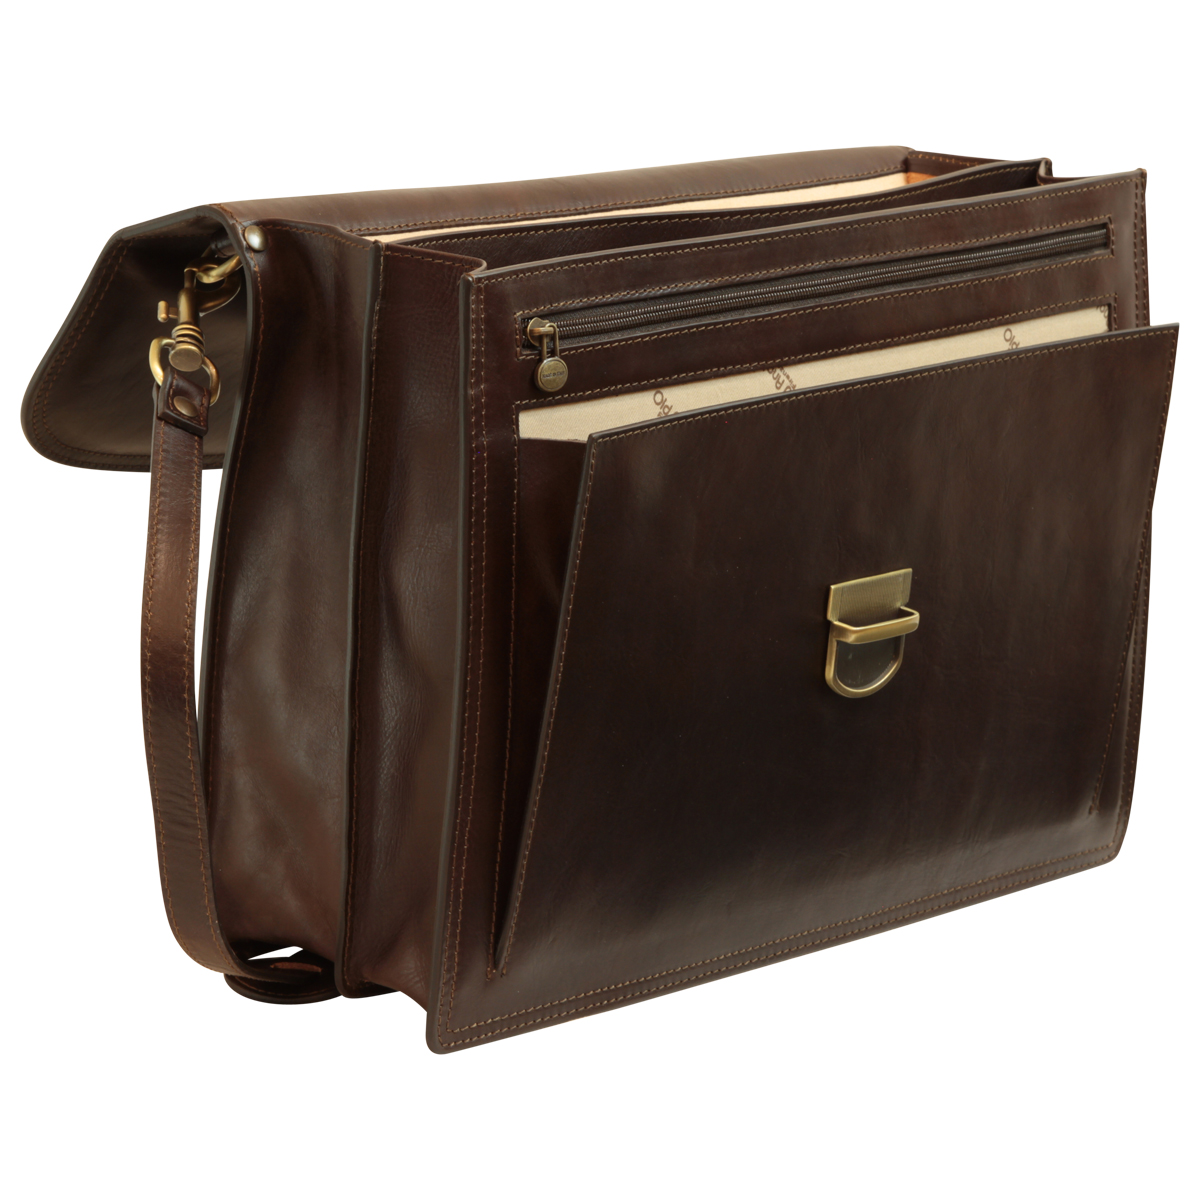 Briefcase with leather shoulder strap - Dark Brown | 201689TM UK | Old Angler Firenze